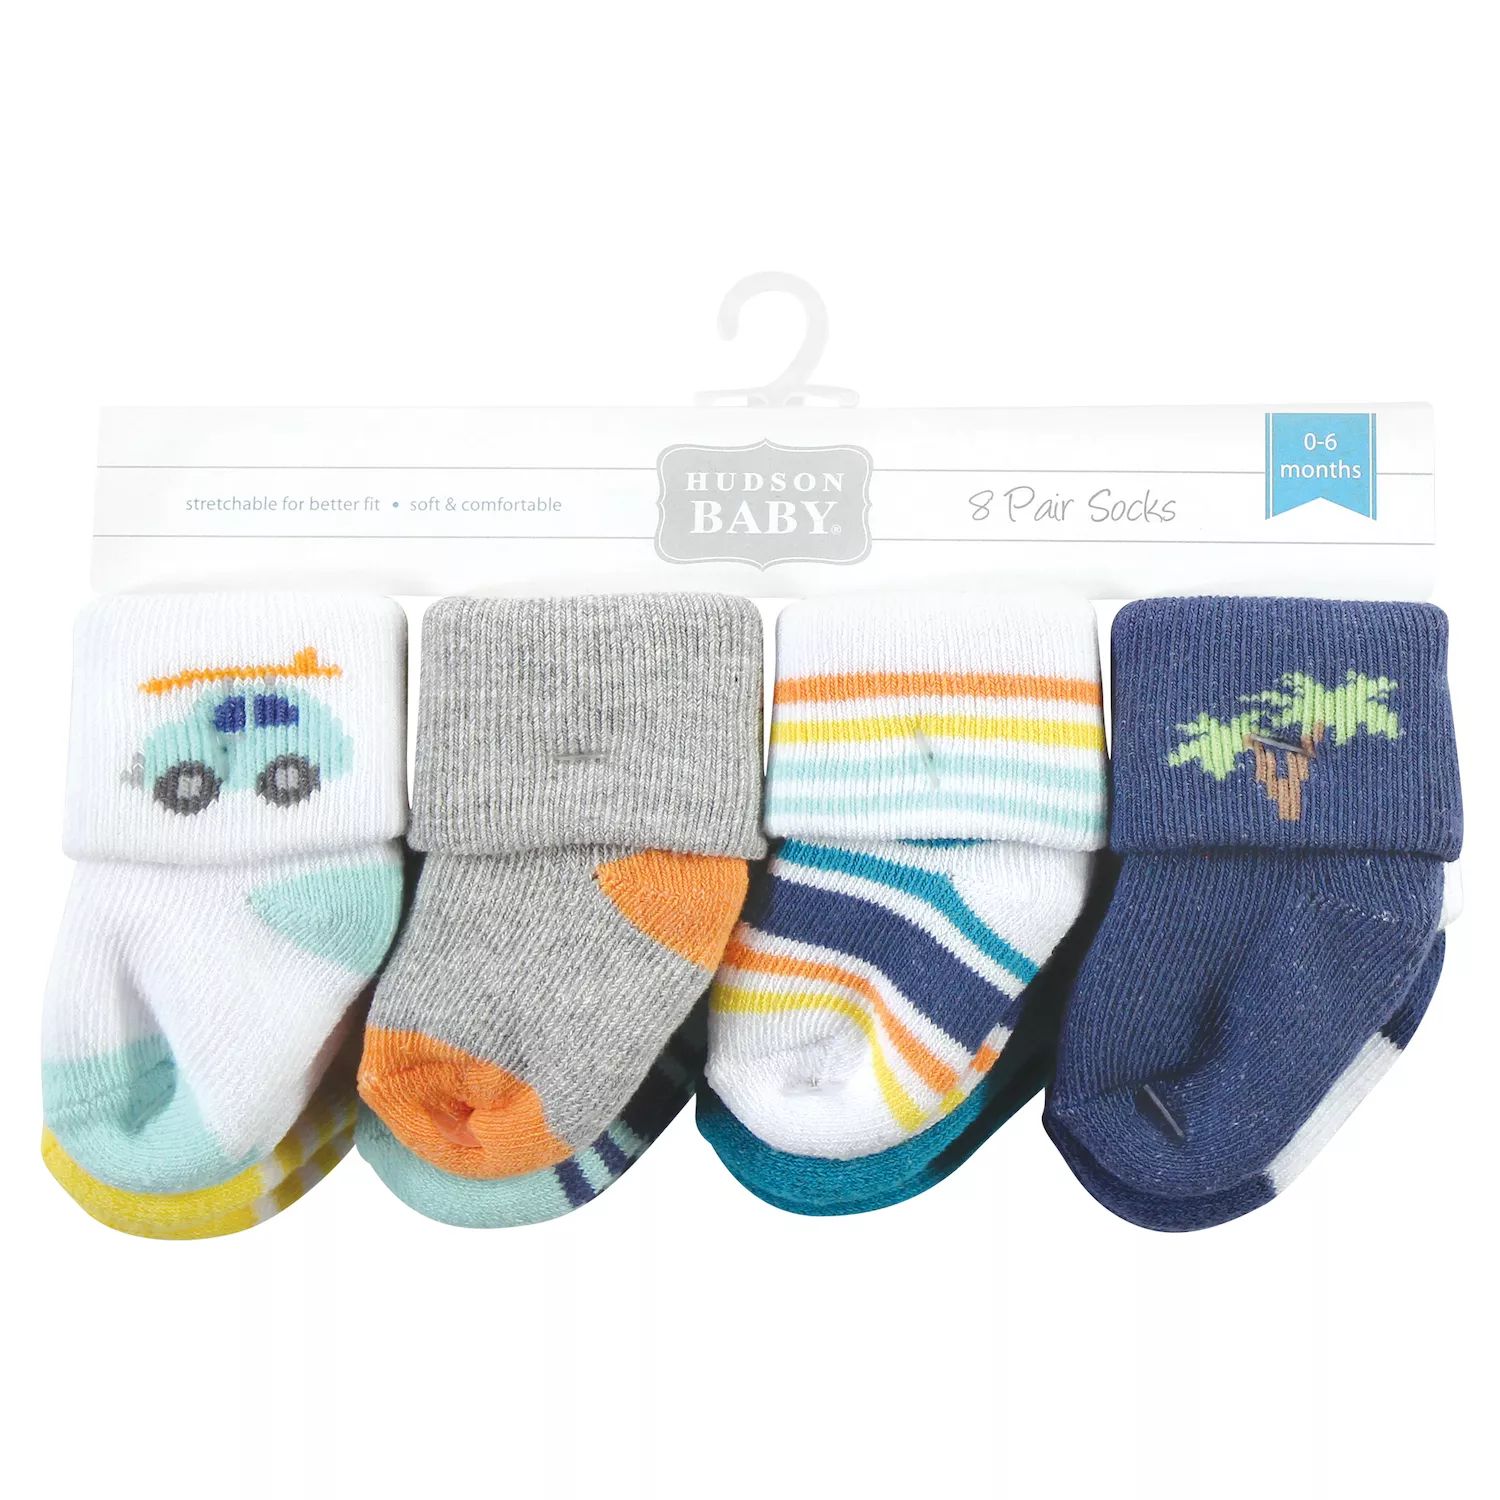 цена Хлопковые носки Hudson для новорожденных мальчиков и махровые носки, Surf Dude Hudson Baby